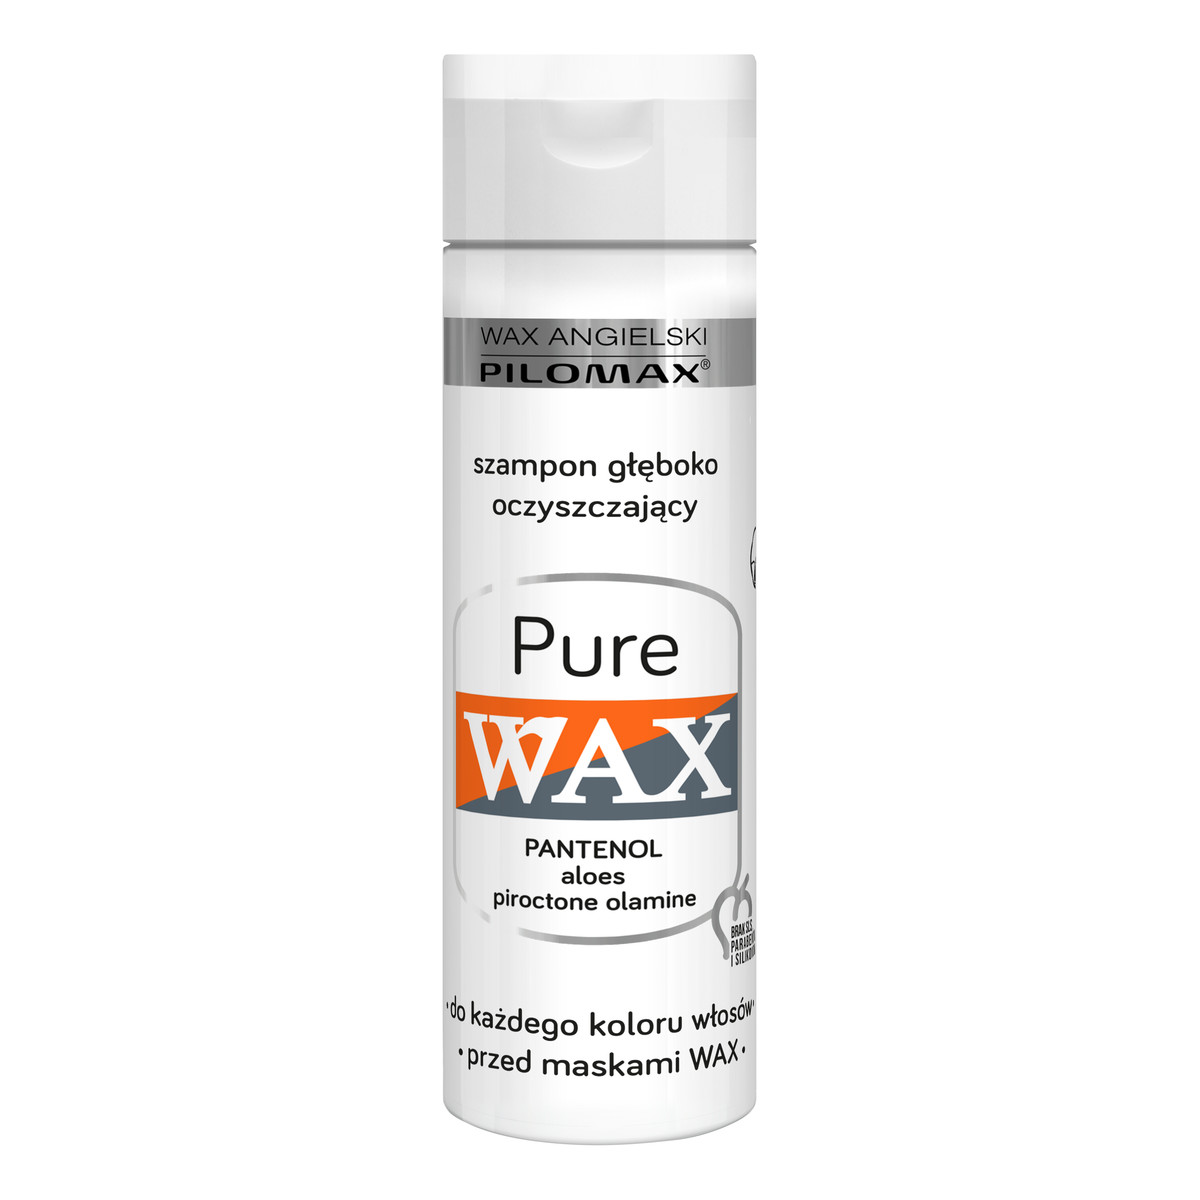 Pilomax Wax Pure Szampon Głęboko Oczyszczający Do każdego koloru włosów przed maskami Wax 250ml